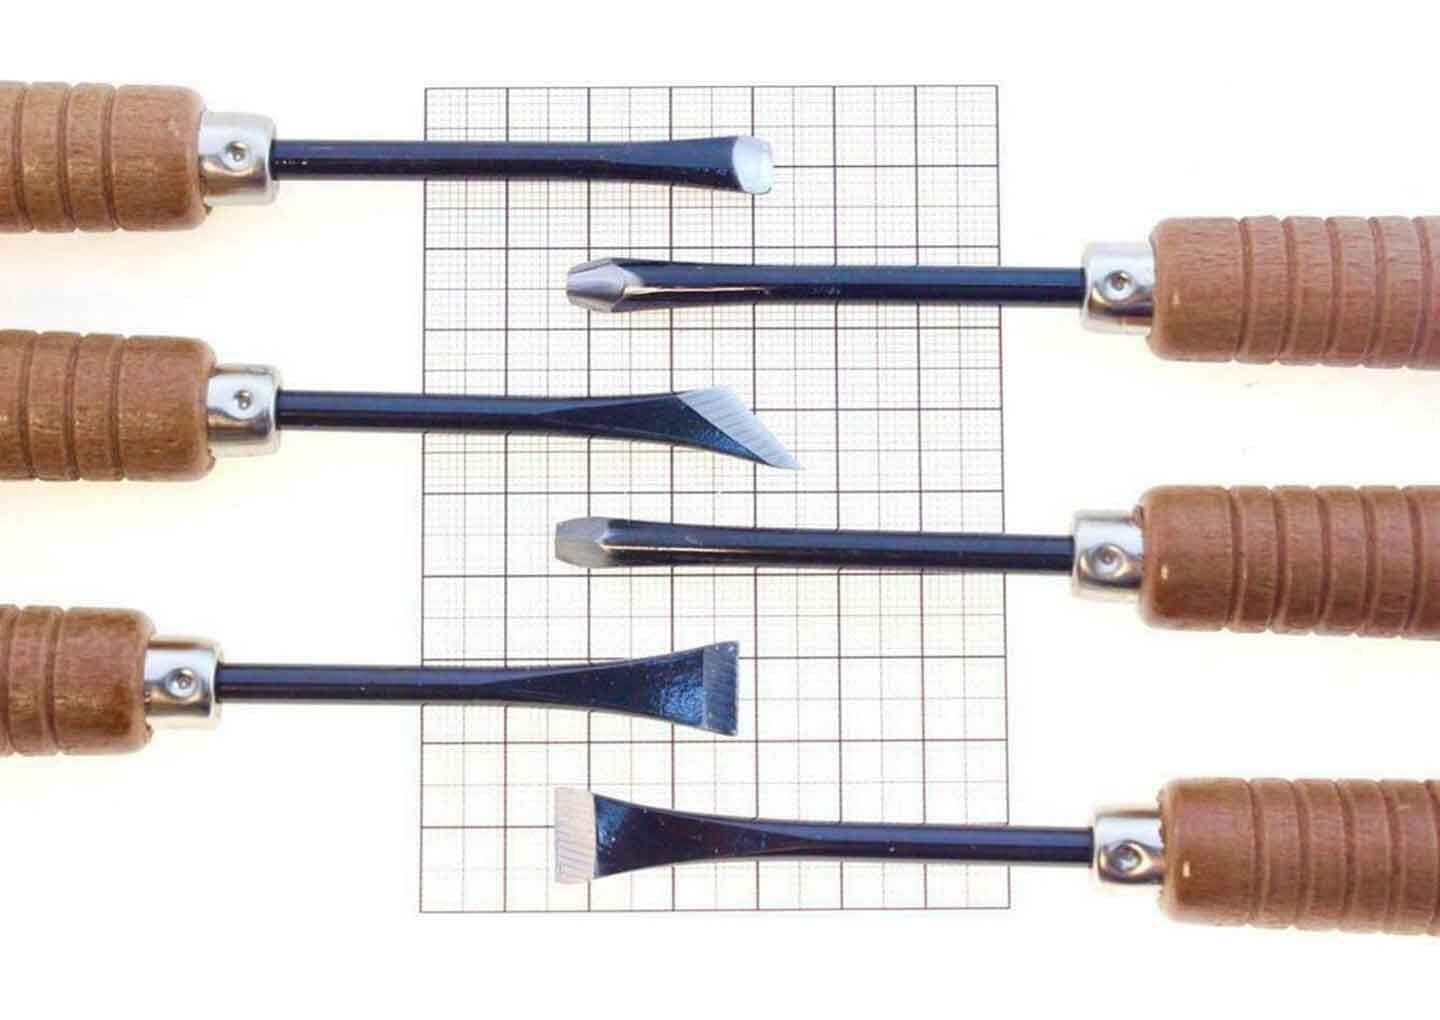 Tohosha Japanese Wood Carving Tools Set 6 Piece Woodworking V U Gouge  Skewed Flat Bent Back Gouges & Chisels Kit, for Woodcarving